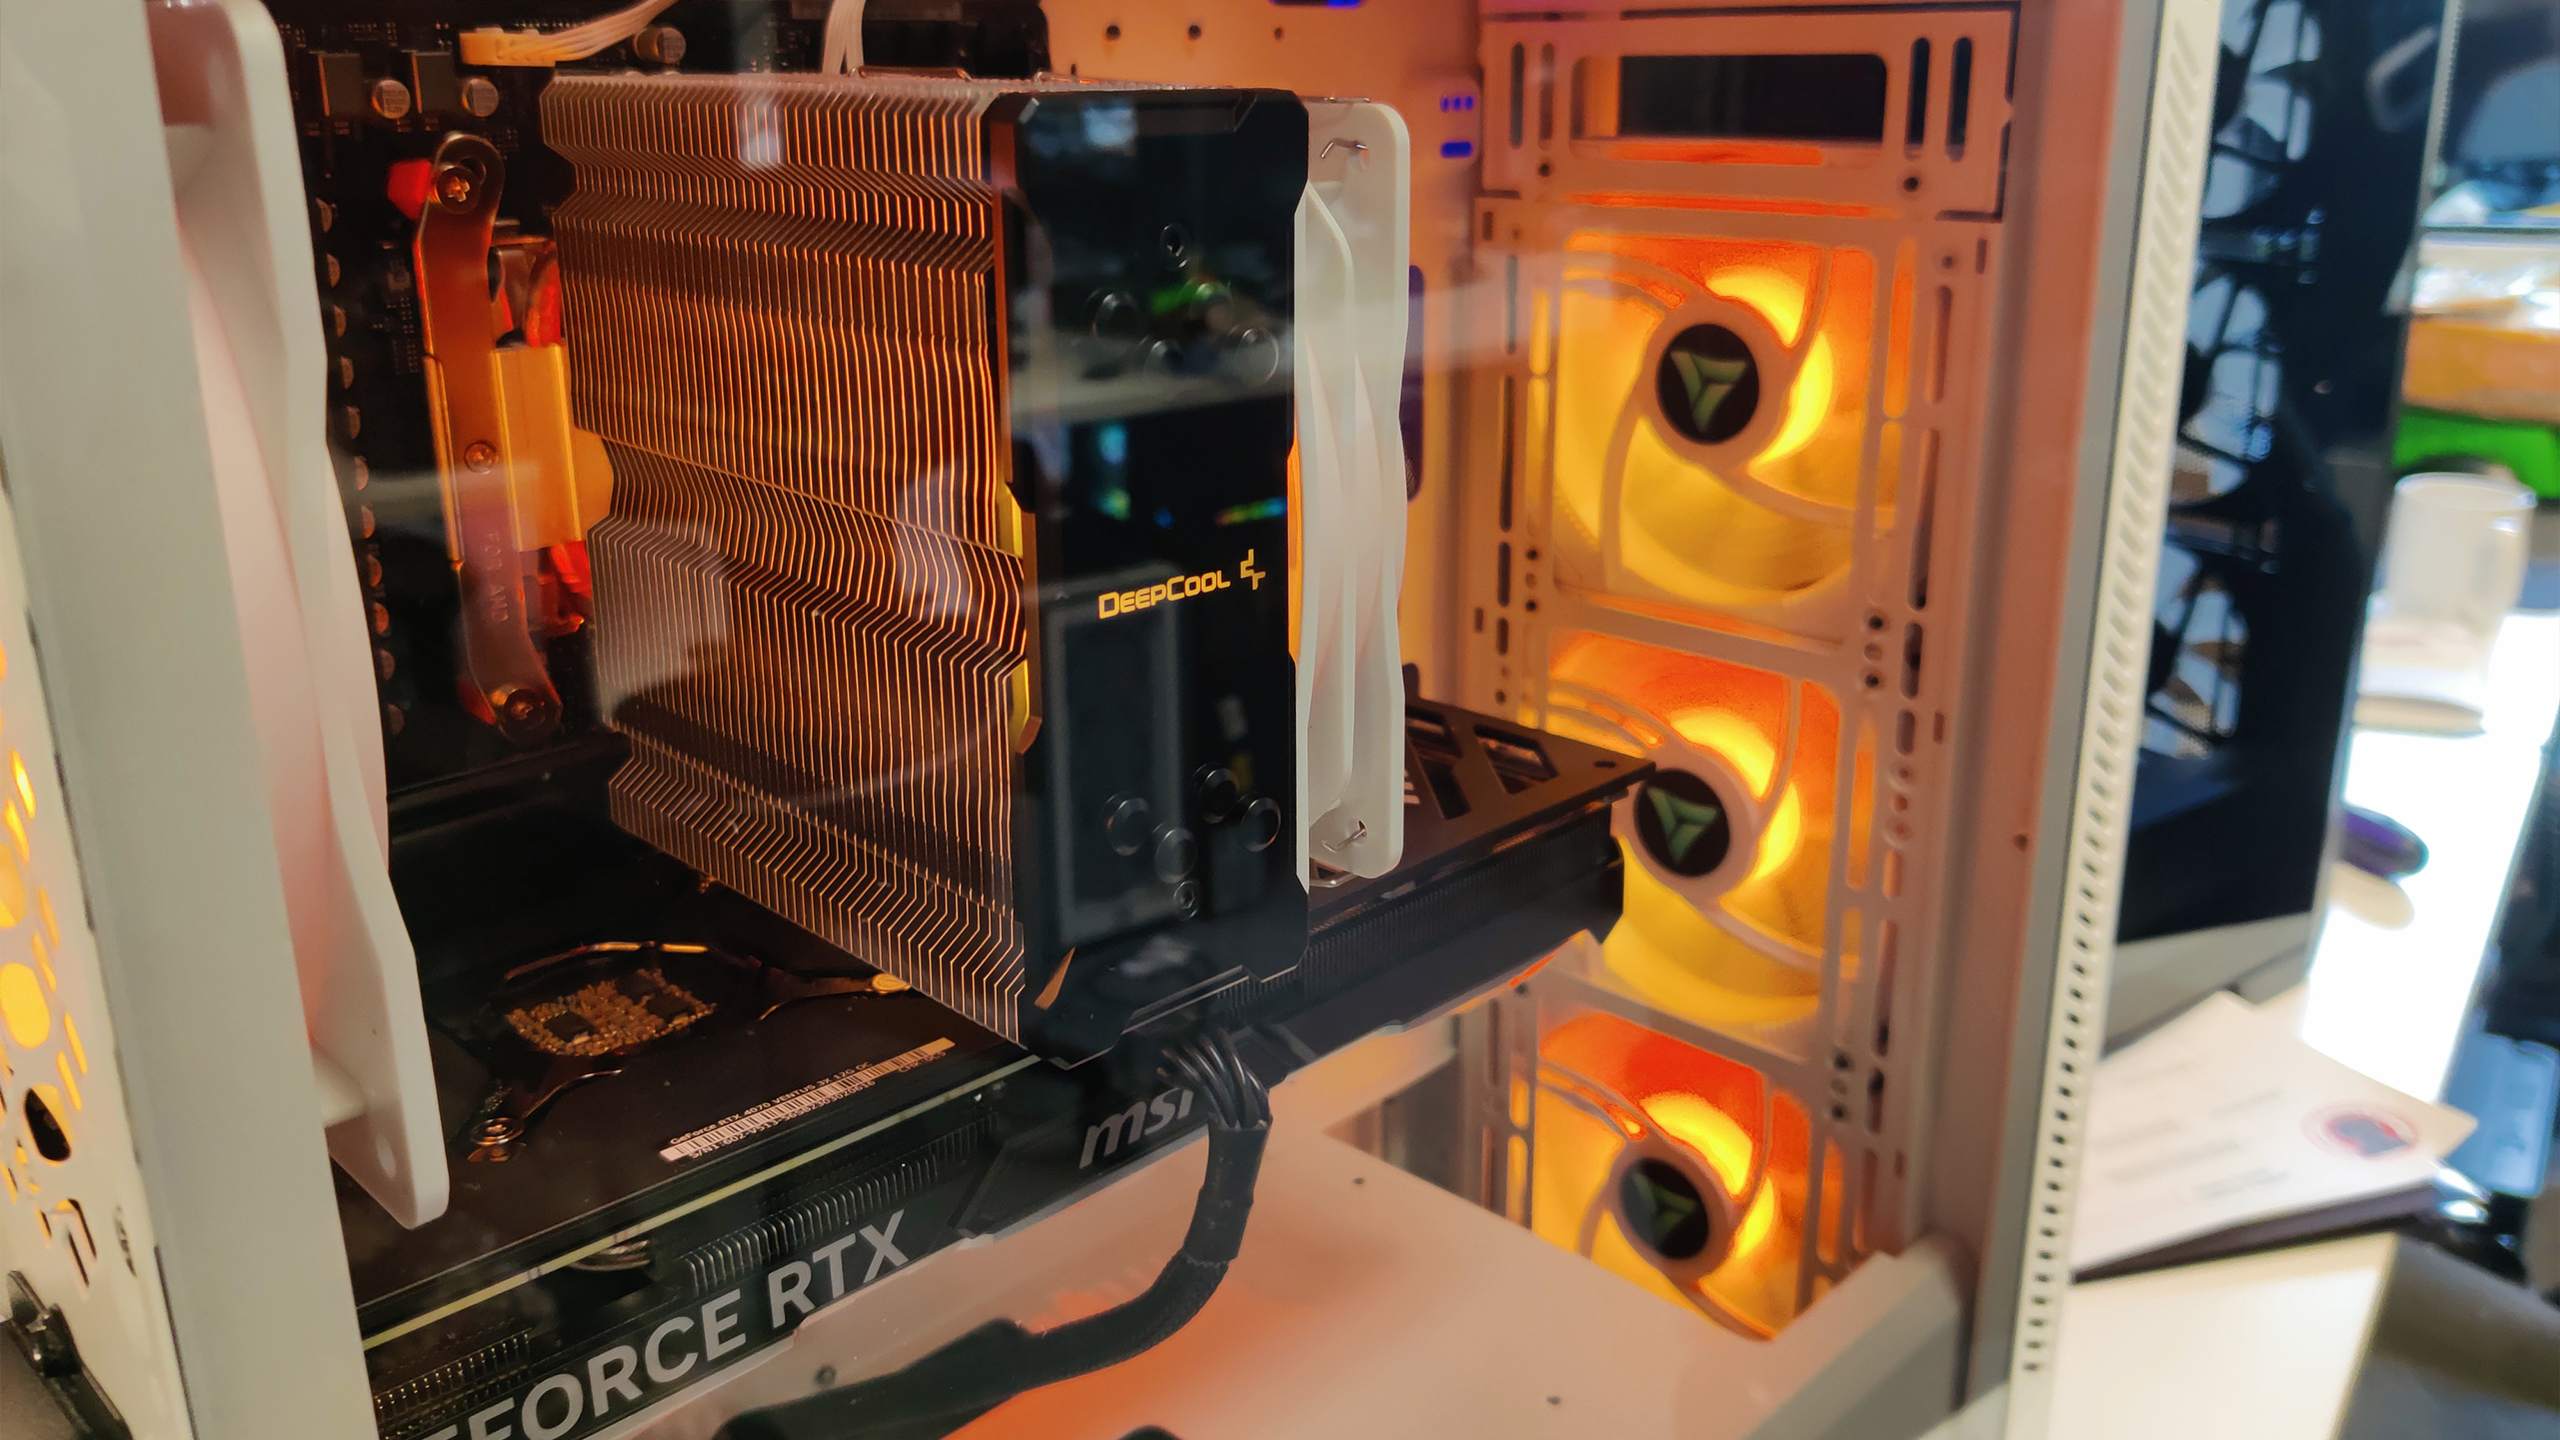 The VRLA Tech Gaming PC in orange.